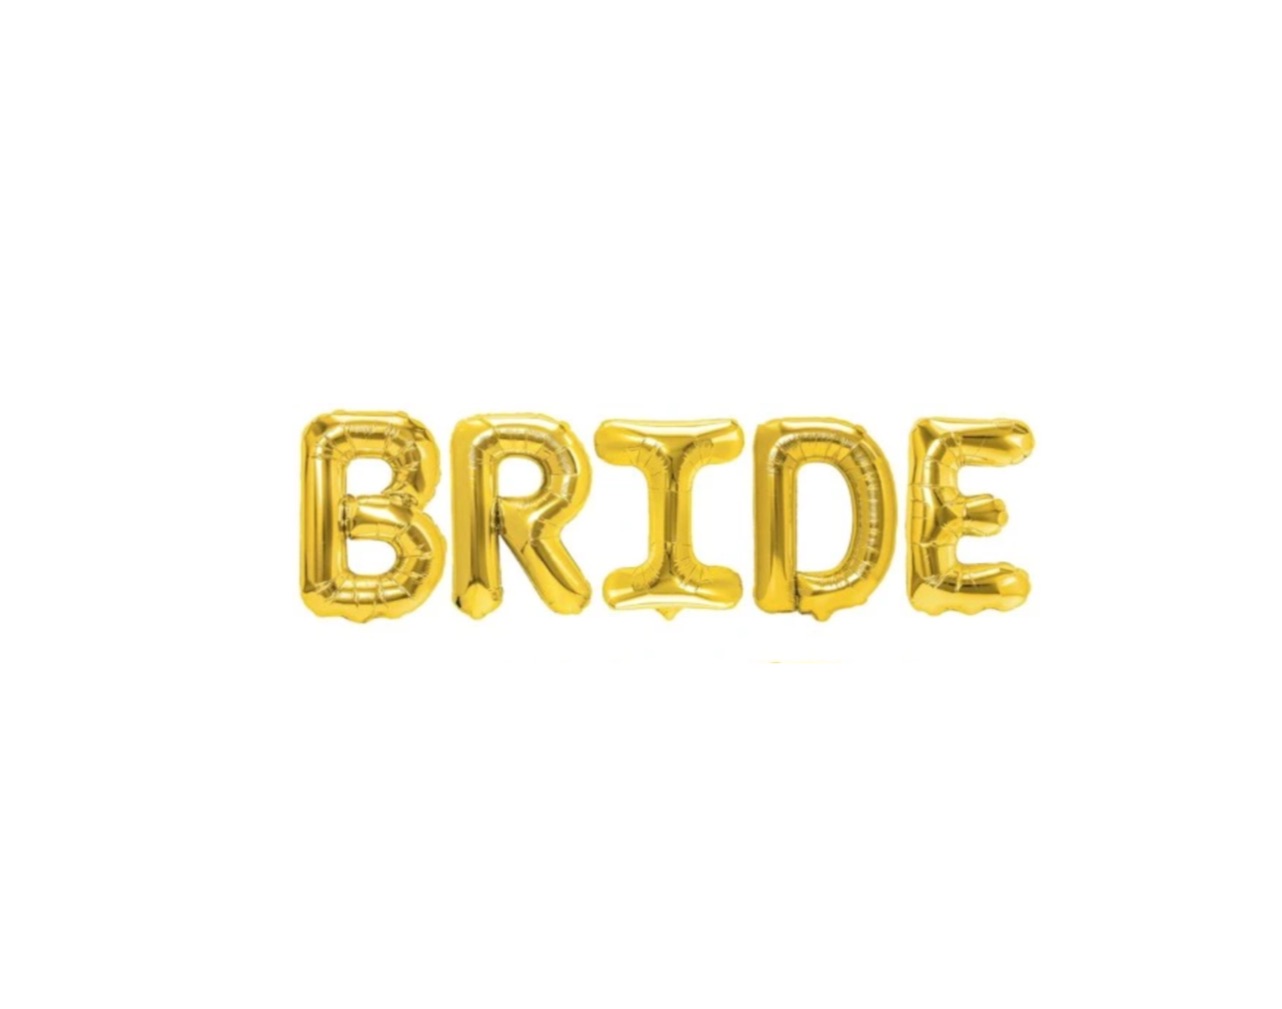 Balony w złotym kolorze tworzący napis BRIDE